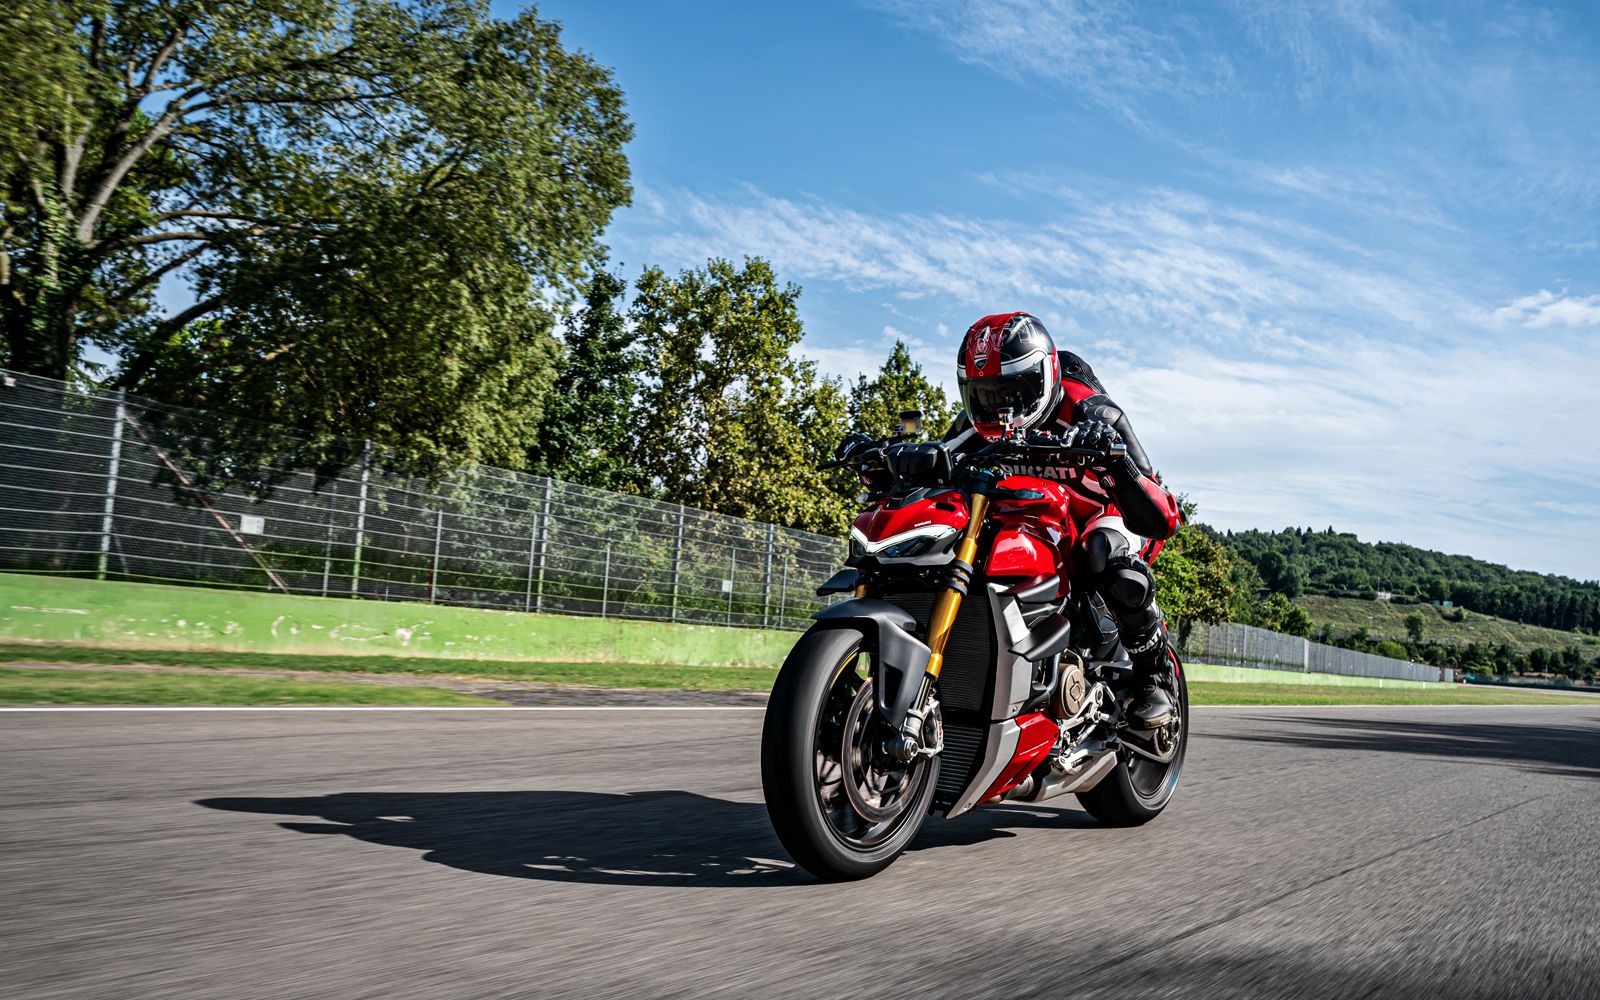 2020 Ducati Streetfighter V4 in action